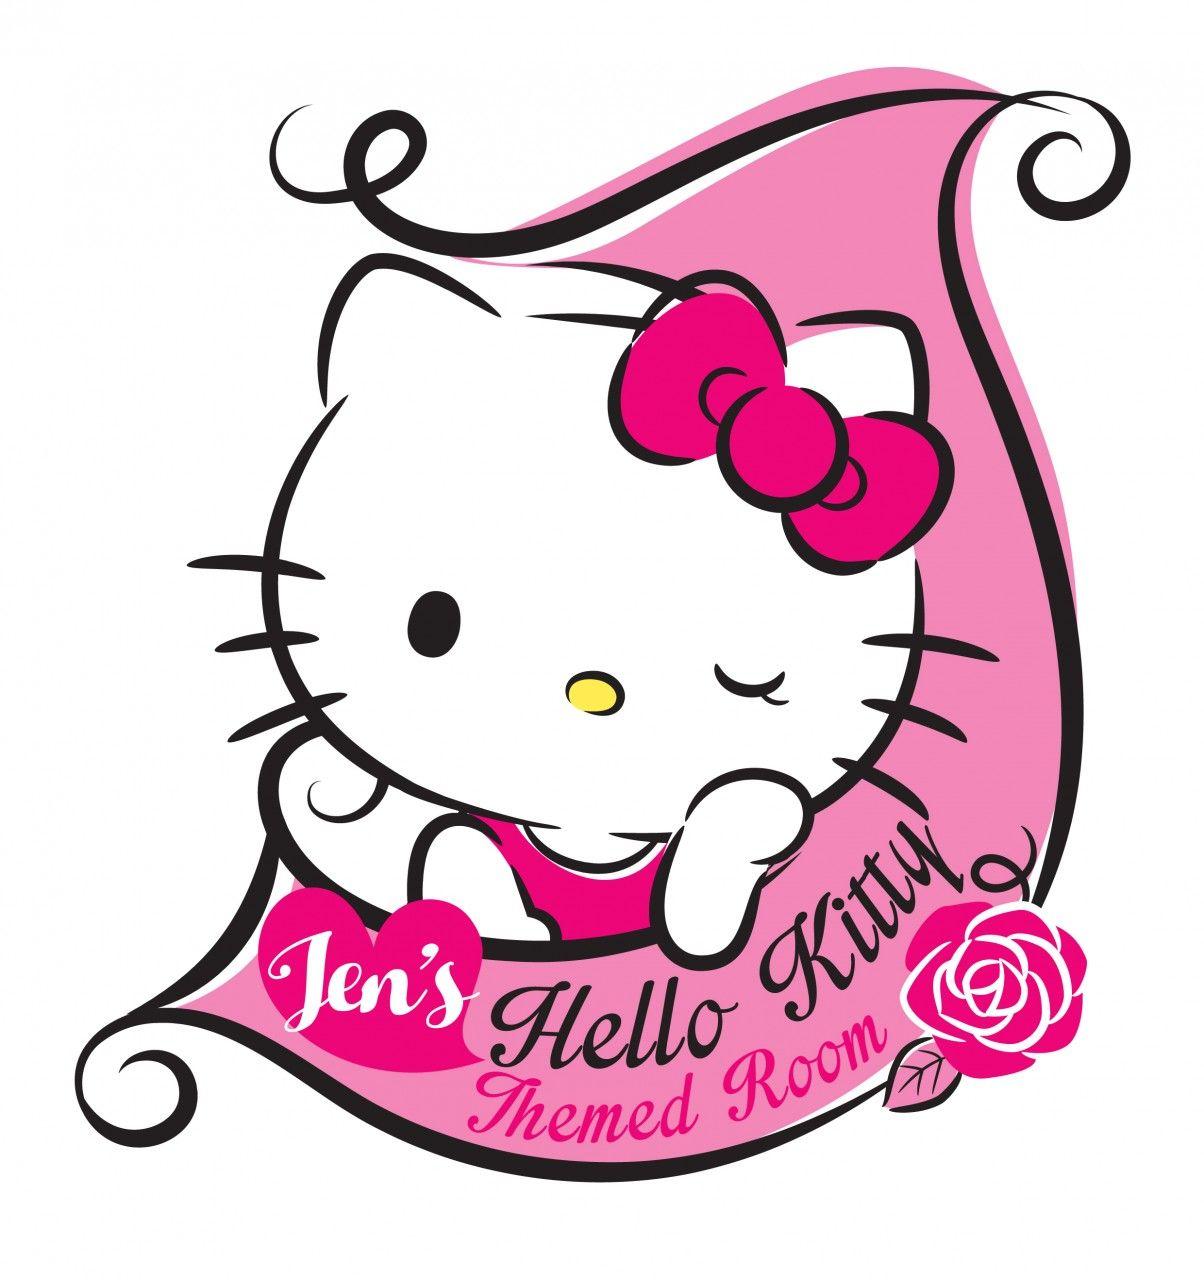 Hello Kitty Logo - Logo - Hello Kitty Themed Room JPEG | Lipstiq.com